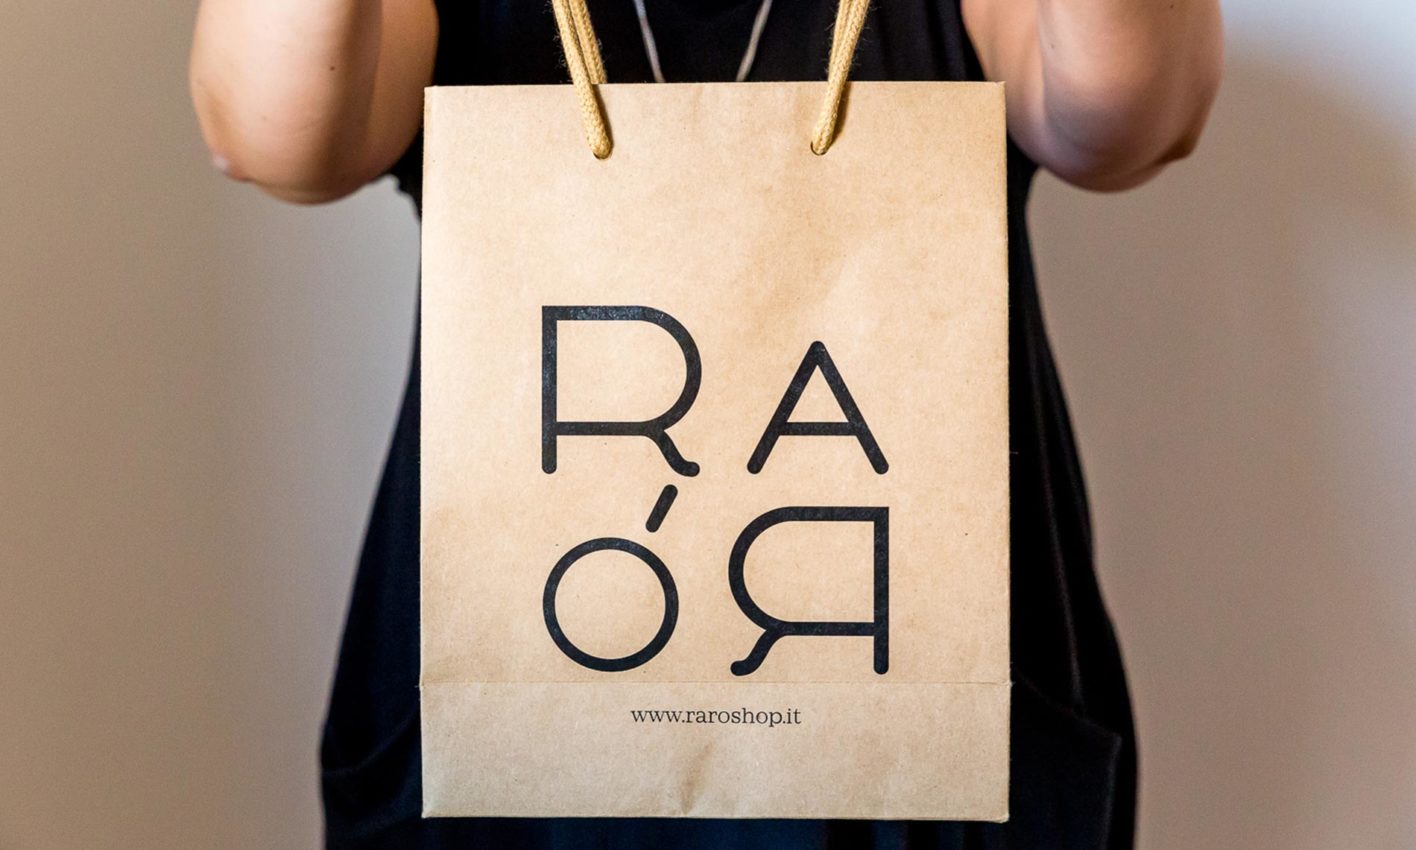 Sistema di identità visiva per Rarò. Studio: Identity Atlas graphic design: Laura Bortoloni, Andrea Verzola; anno: 2015